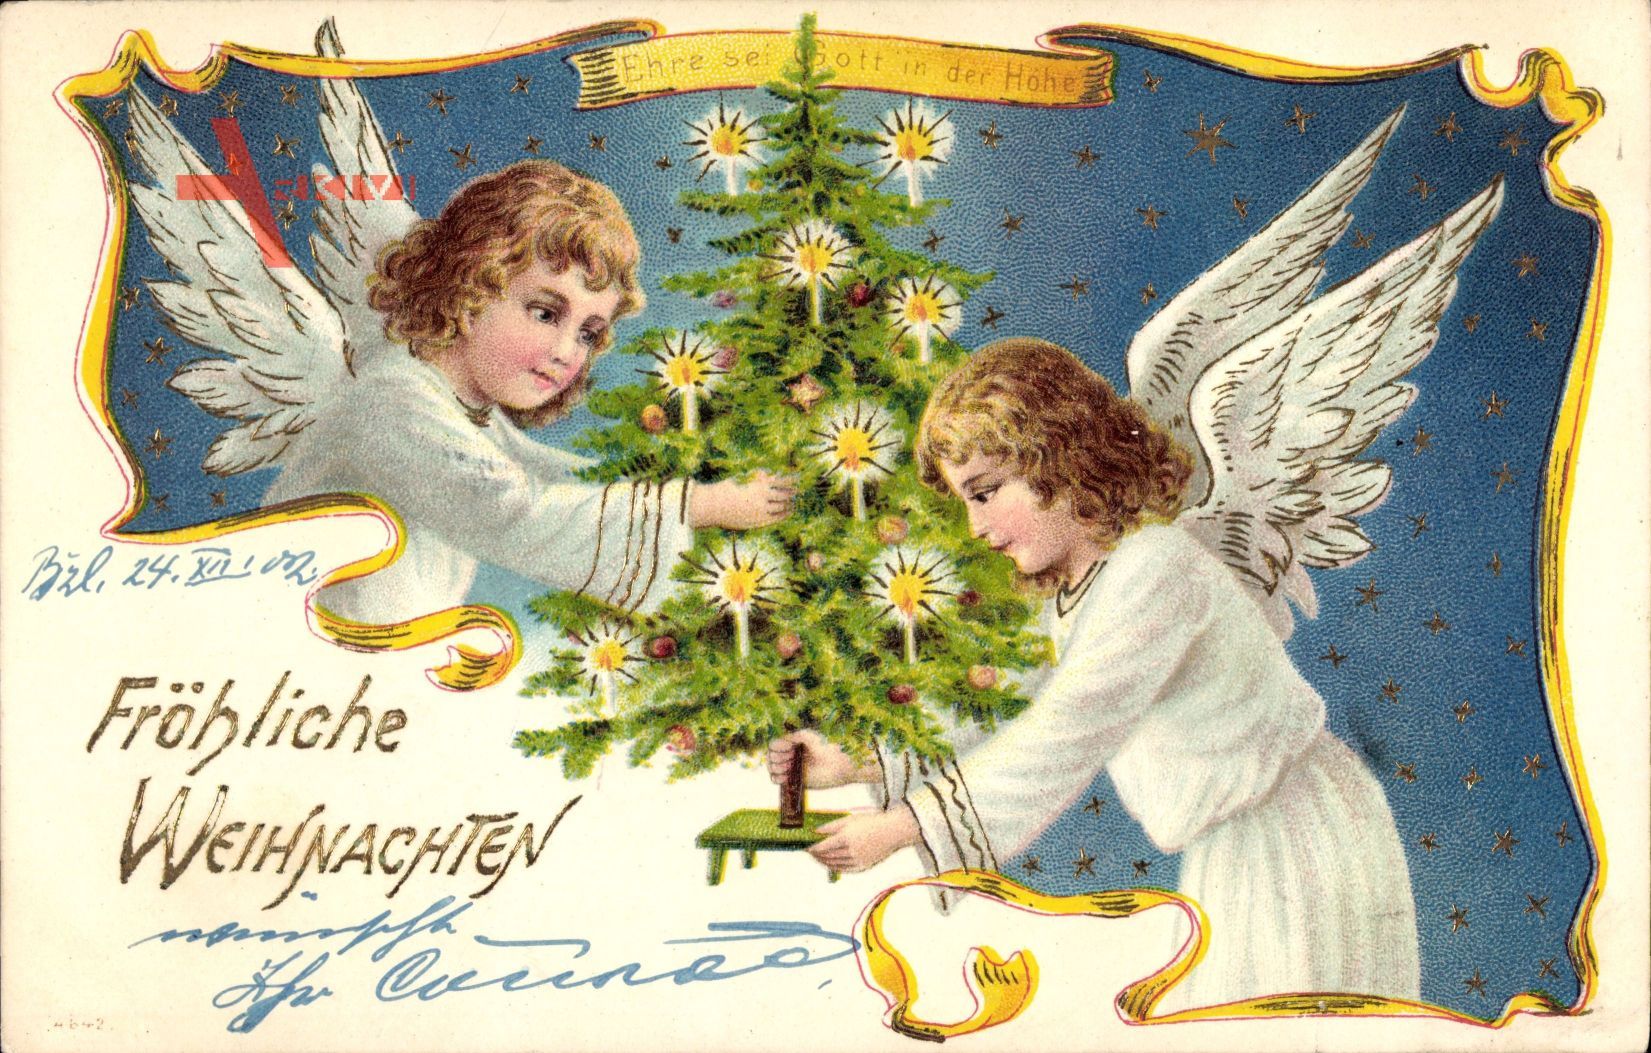 Glückwunsch Weihnachten, Zwei Engel schmücken den Weihnachtsbaum